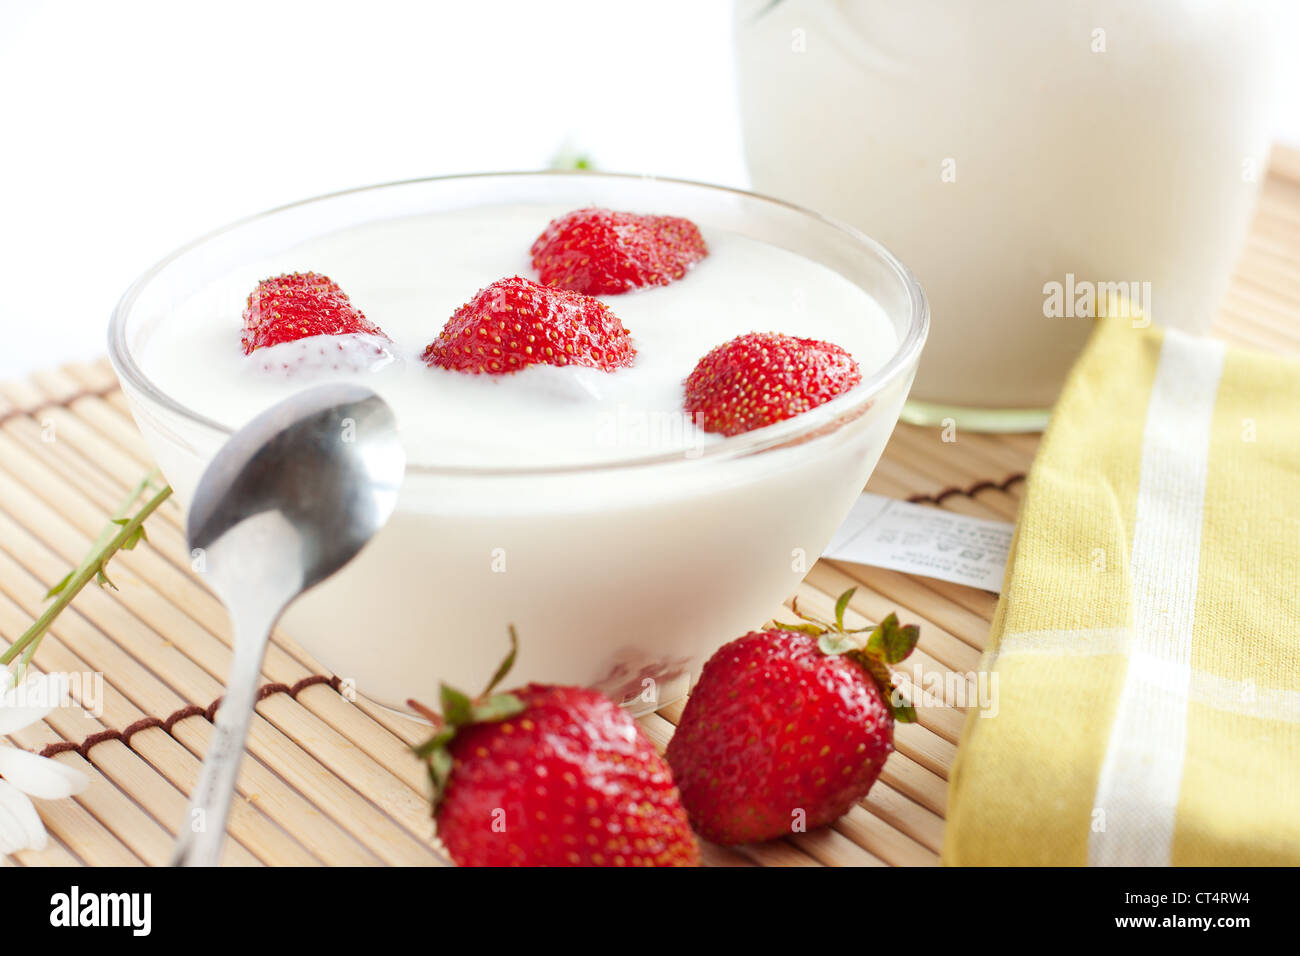 Strawberry yogurt with ripe berries close-up Stock Photo